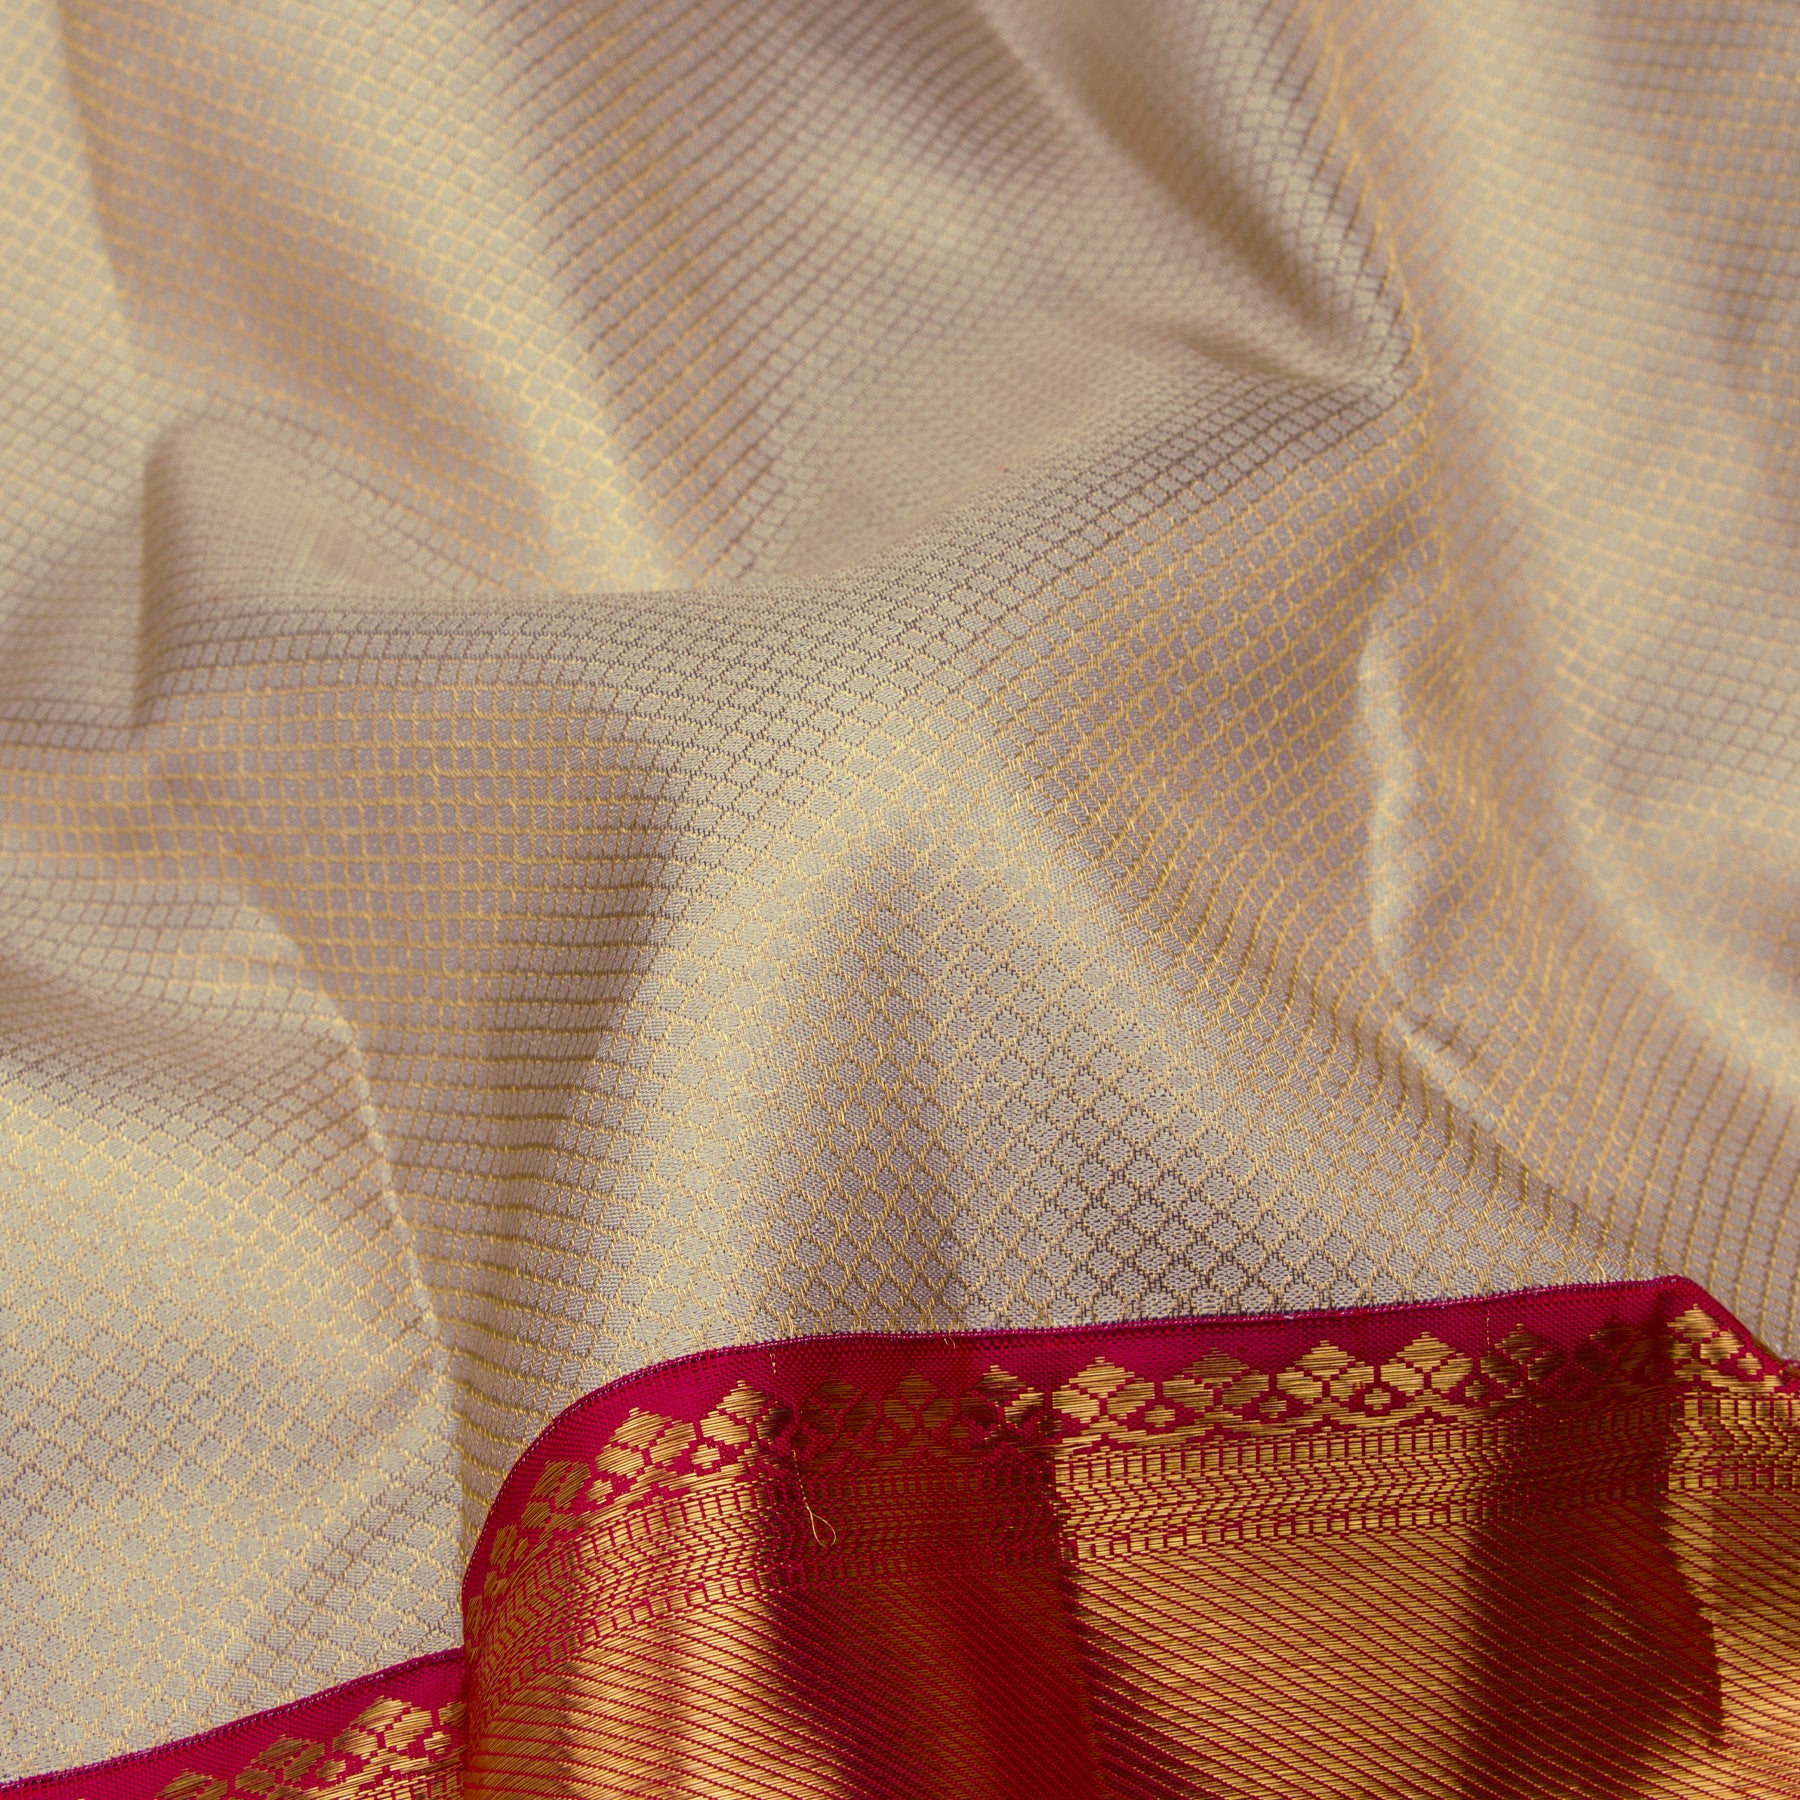 Kanakavalli Kanjivaram Silk Sari 23-110-HS001-10007 - Fabric View